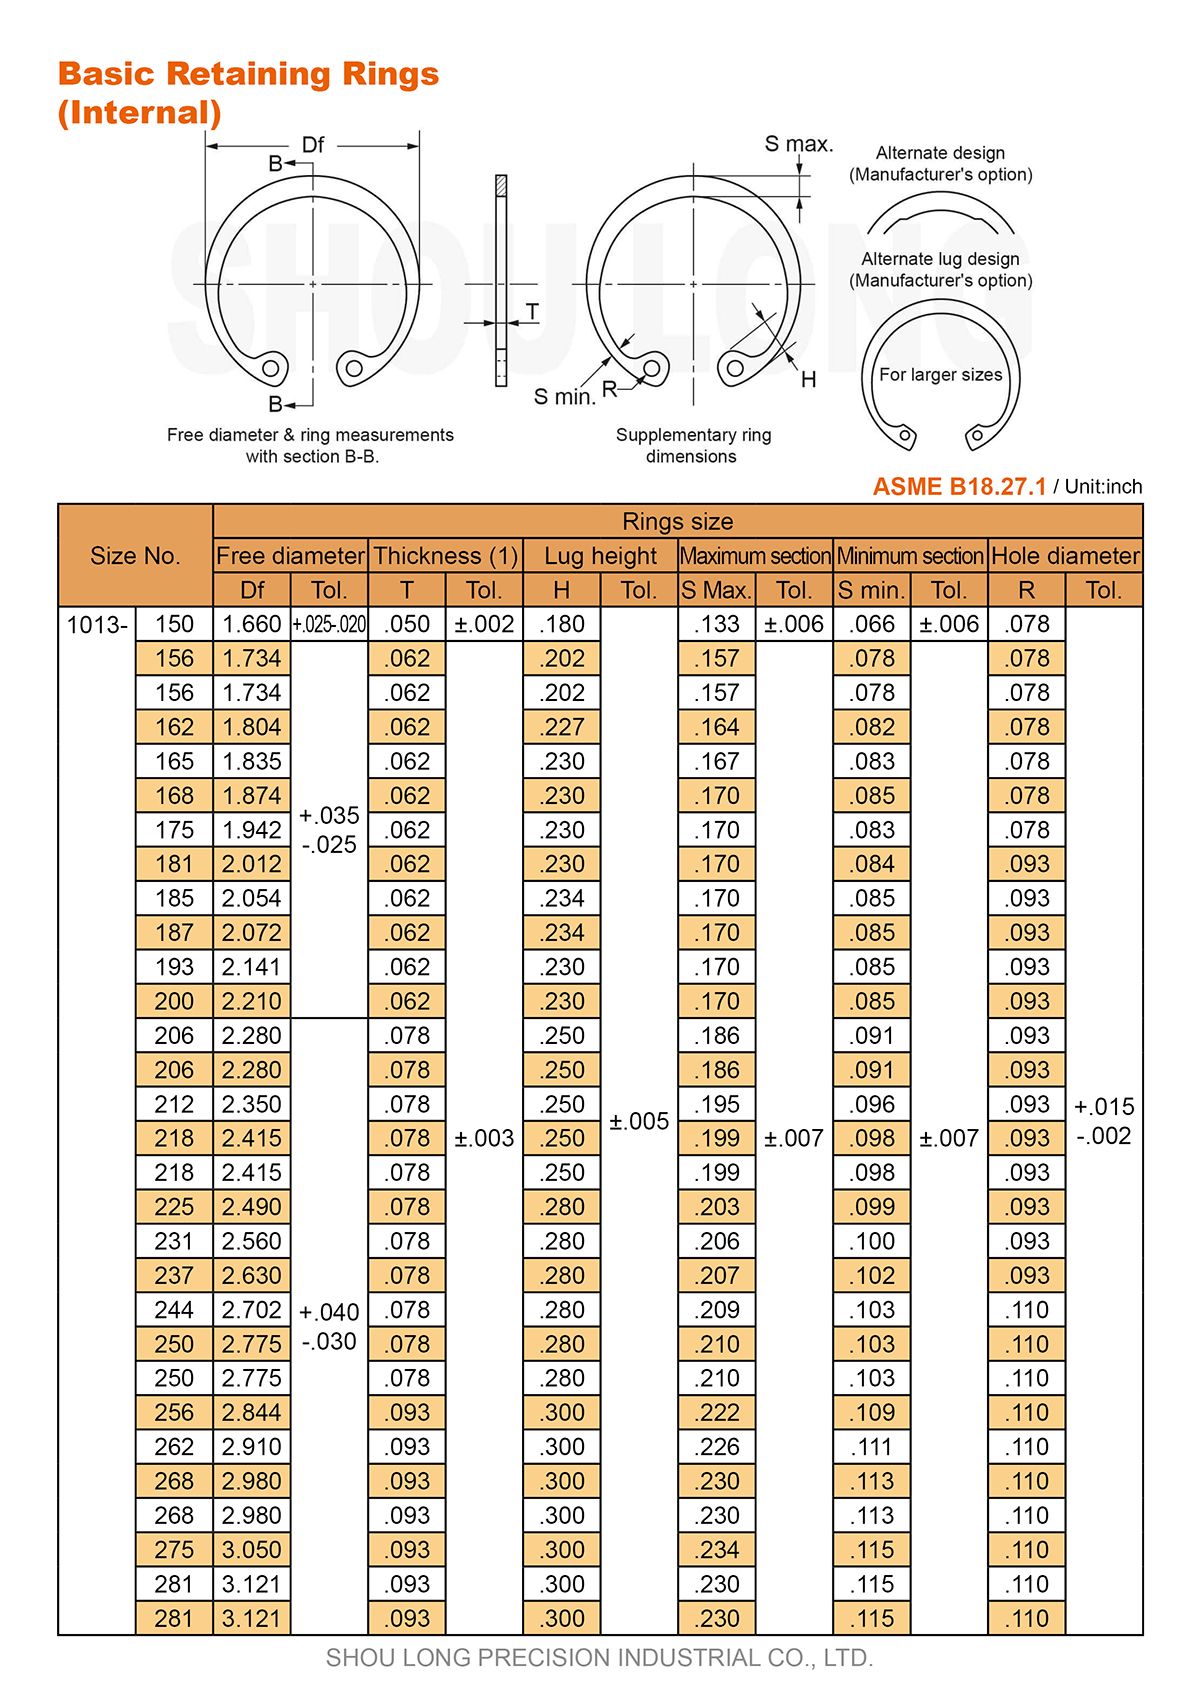 Especificação de Anéis de Retenção Básicos em Polegadas para Furos ASME/ANSI B18.27.1-2